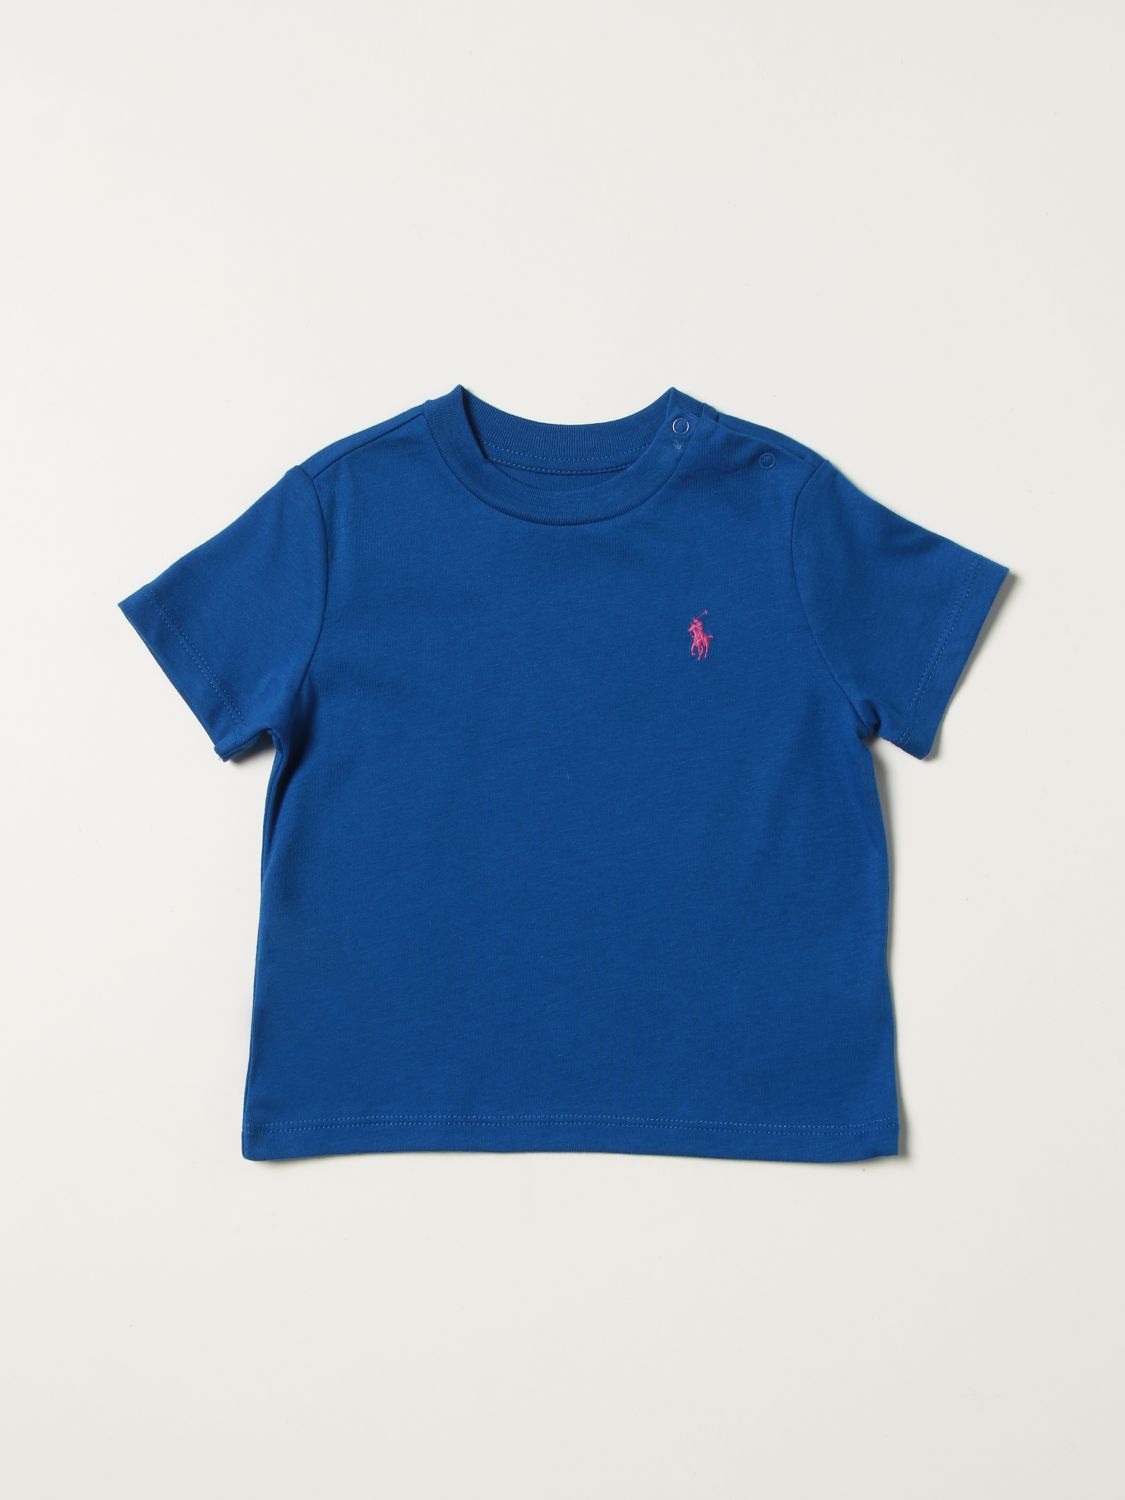 Tシャツ ポロラルフローレン: Tシャツ Polo Ralph Lauren 幼児 ロイヤルブルー 1